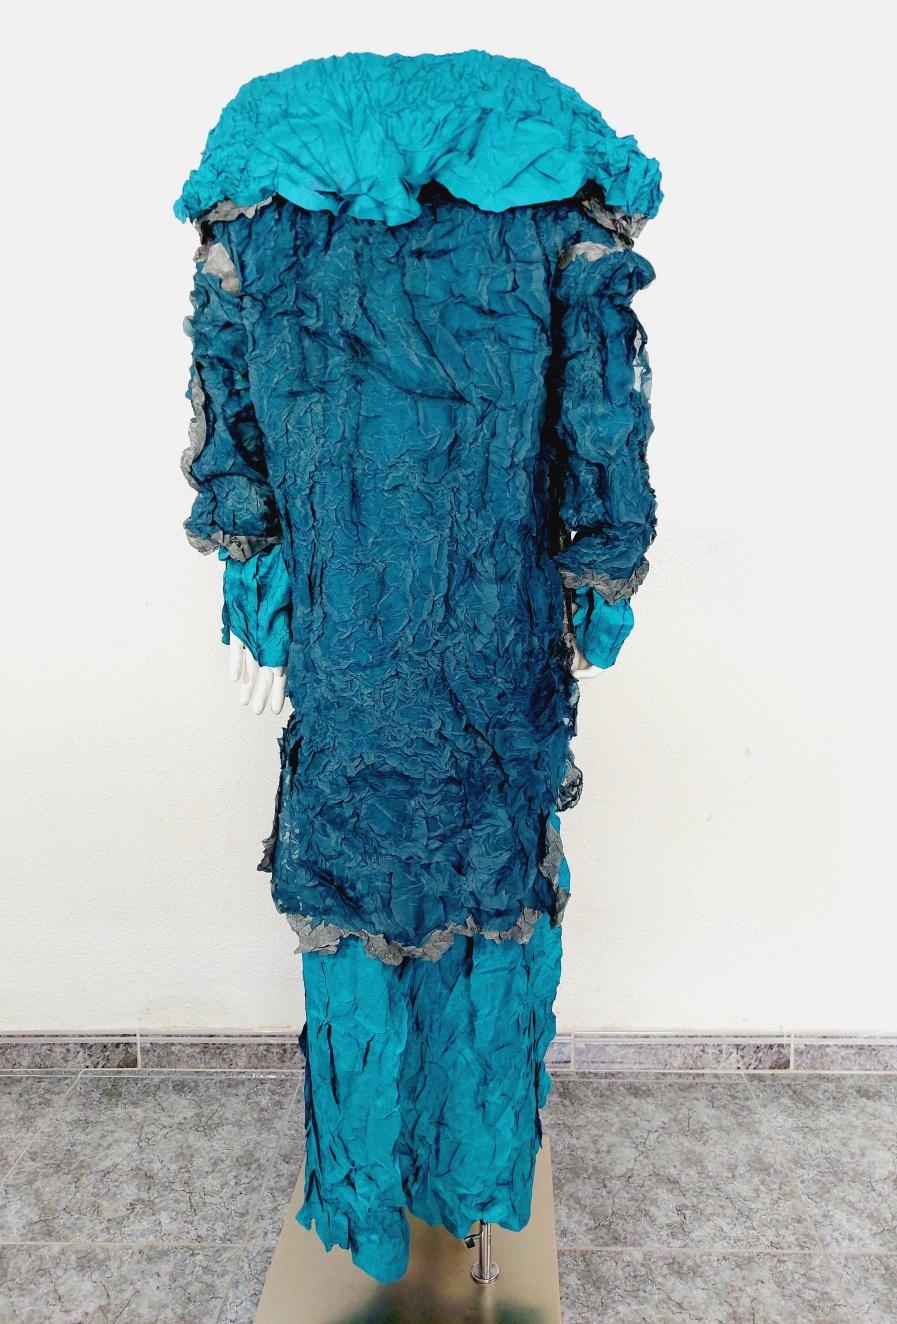 Issey Miyake Metallic Blue Wrinkled Runway Japanese Pleats Please Dress Gown 9